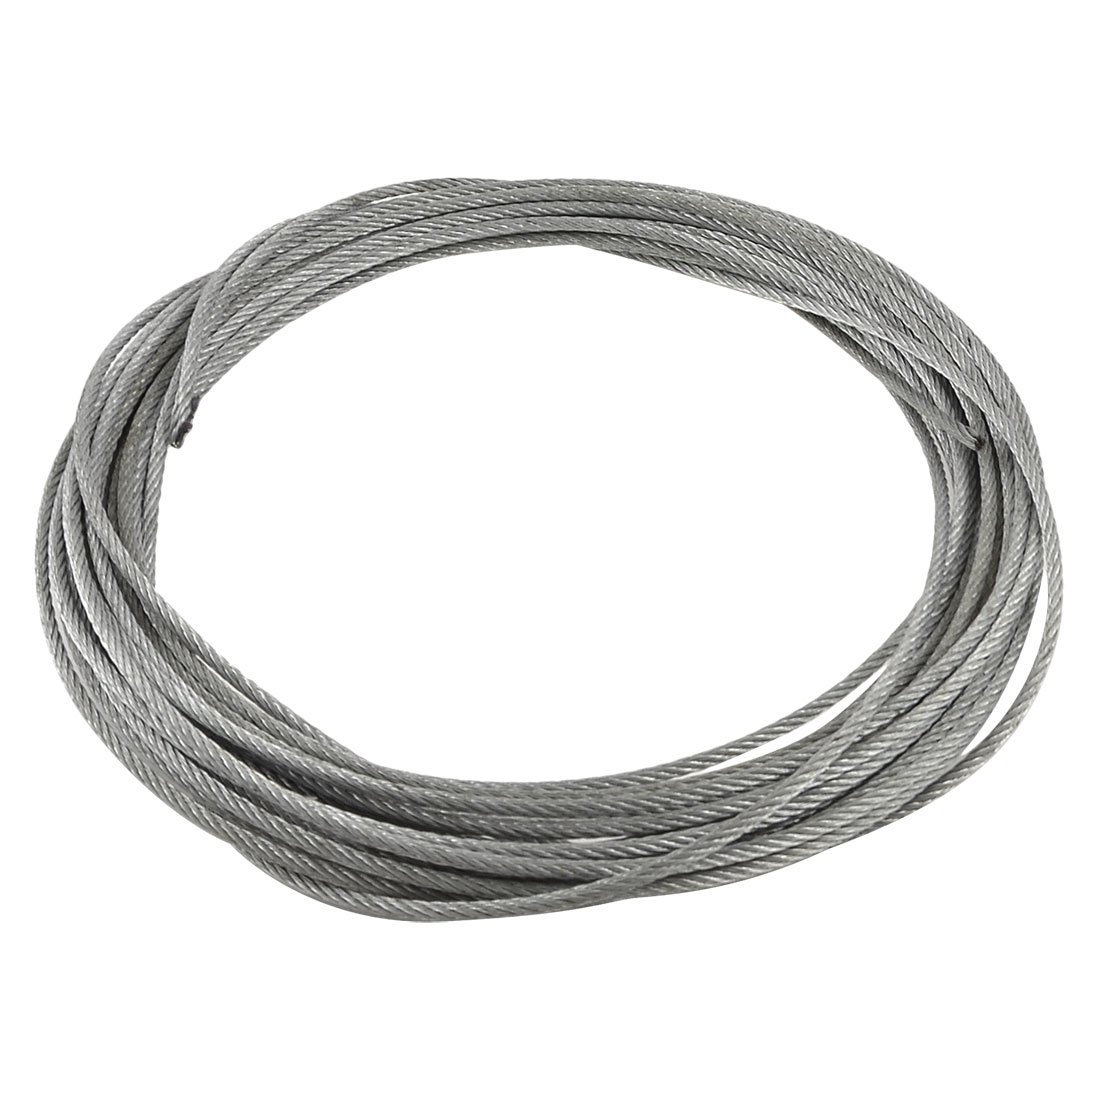 100% новый 3 мм диаметр нержавеющей стали трос кабель 12 м длина